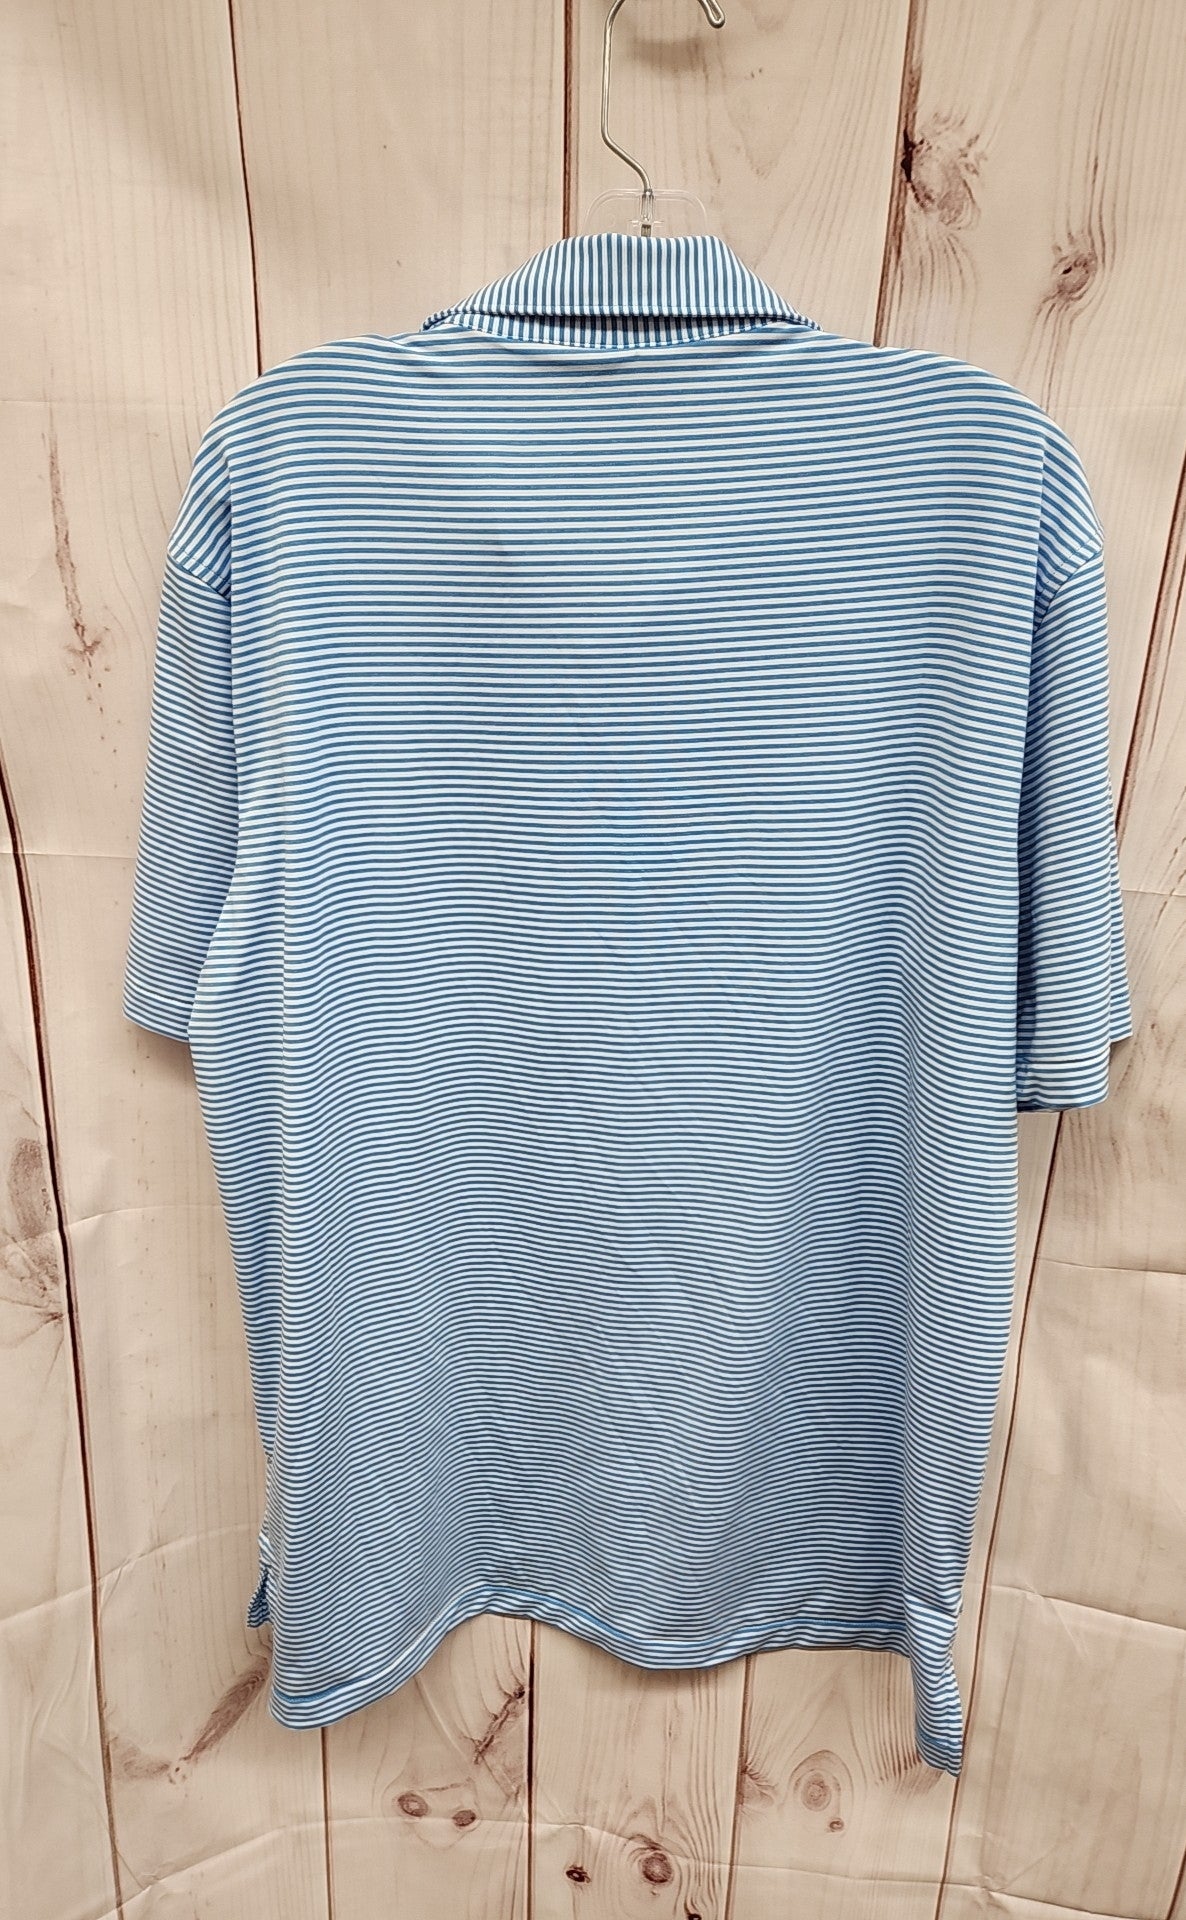 Peter MIllar Men's Size L Blue Shirt